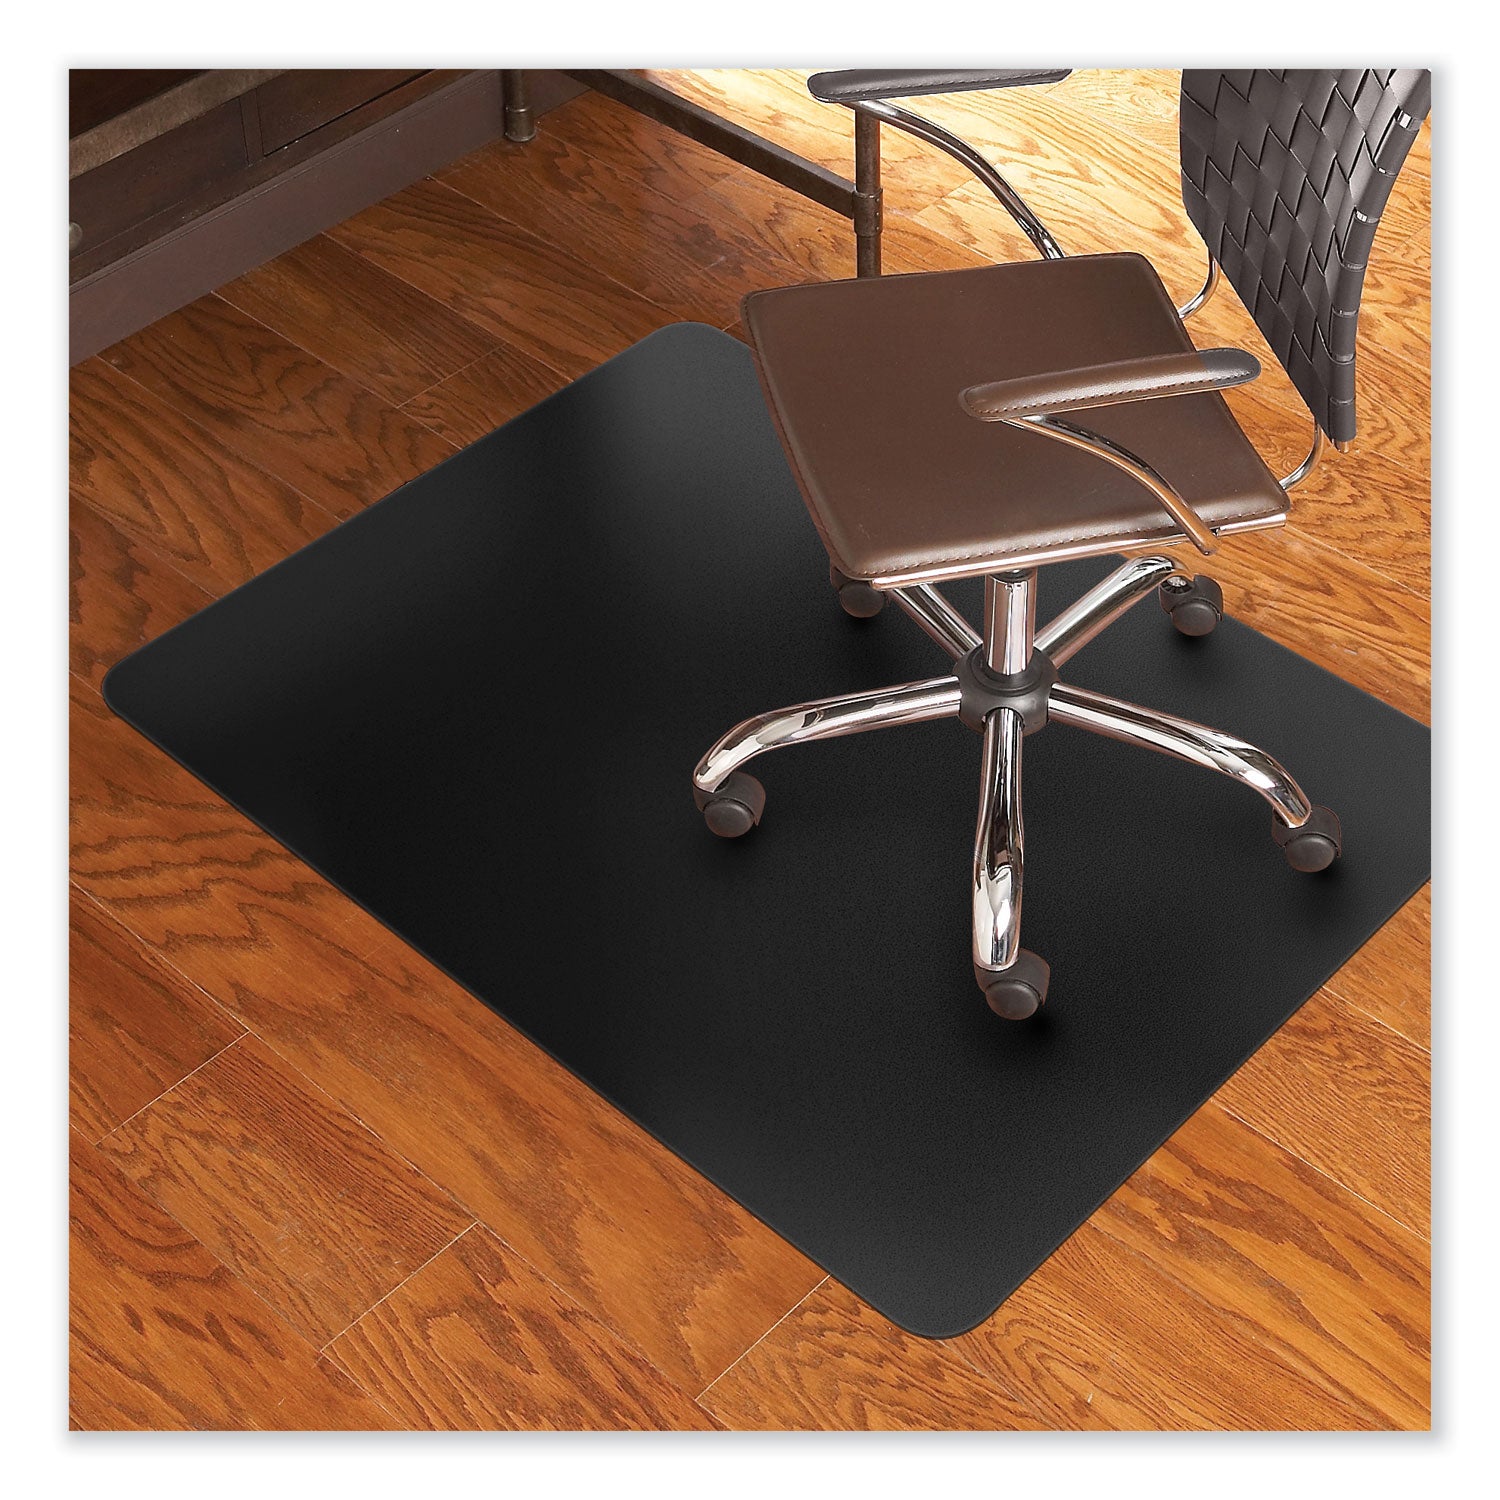 trendsetter-chair-mat-for-hard-floors-36-x-48-black-ships-in-4-6-business-days_esr132013 - 2